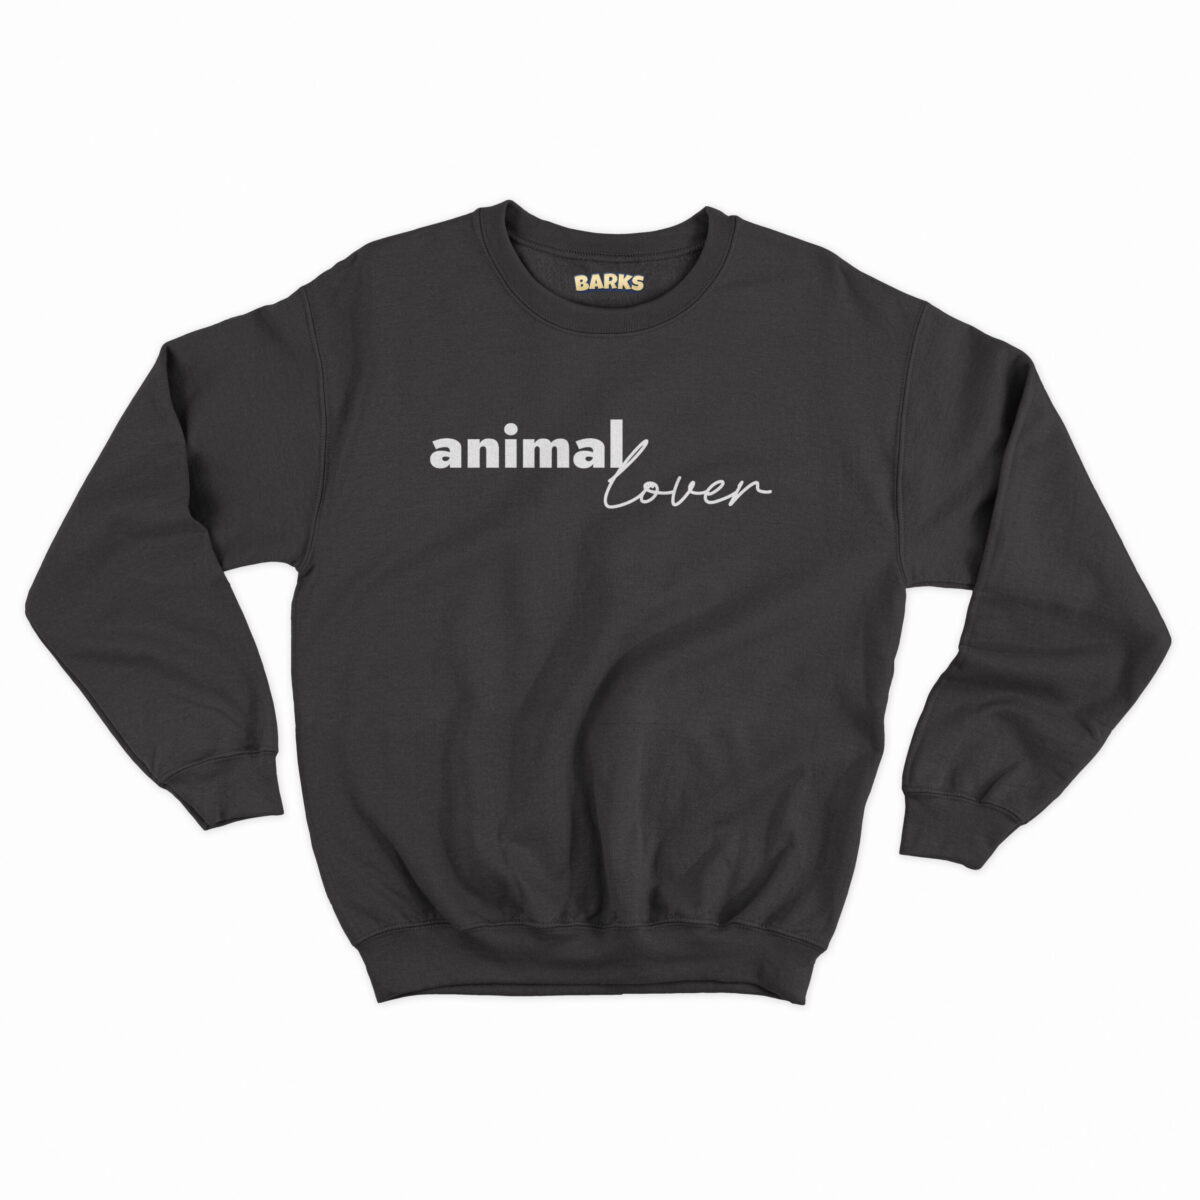 barks sweater animal lover zwart scaled